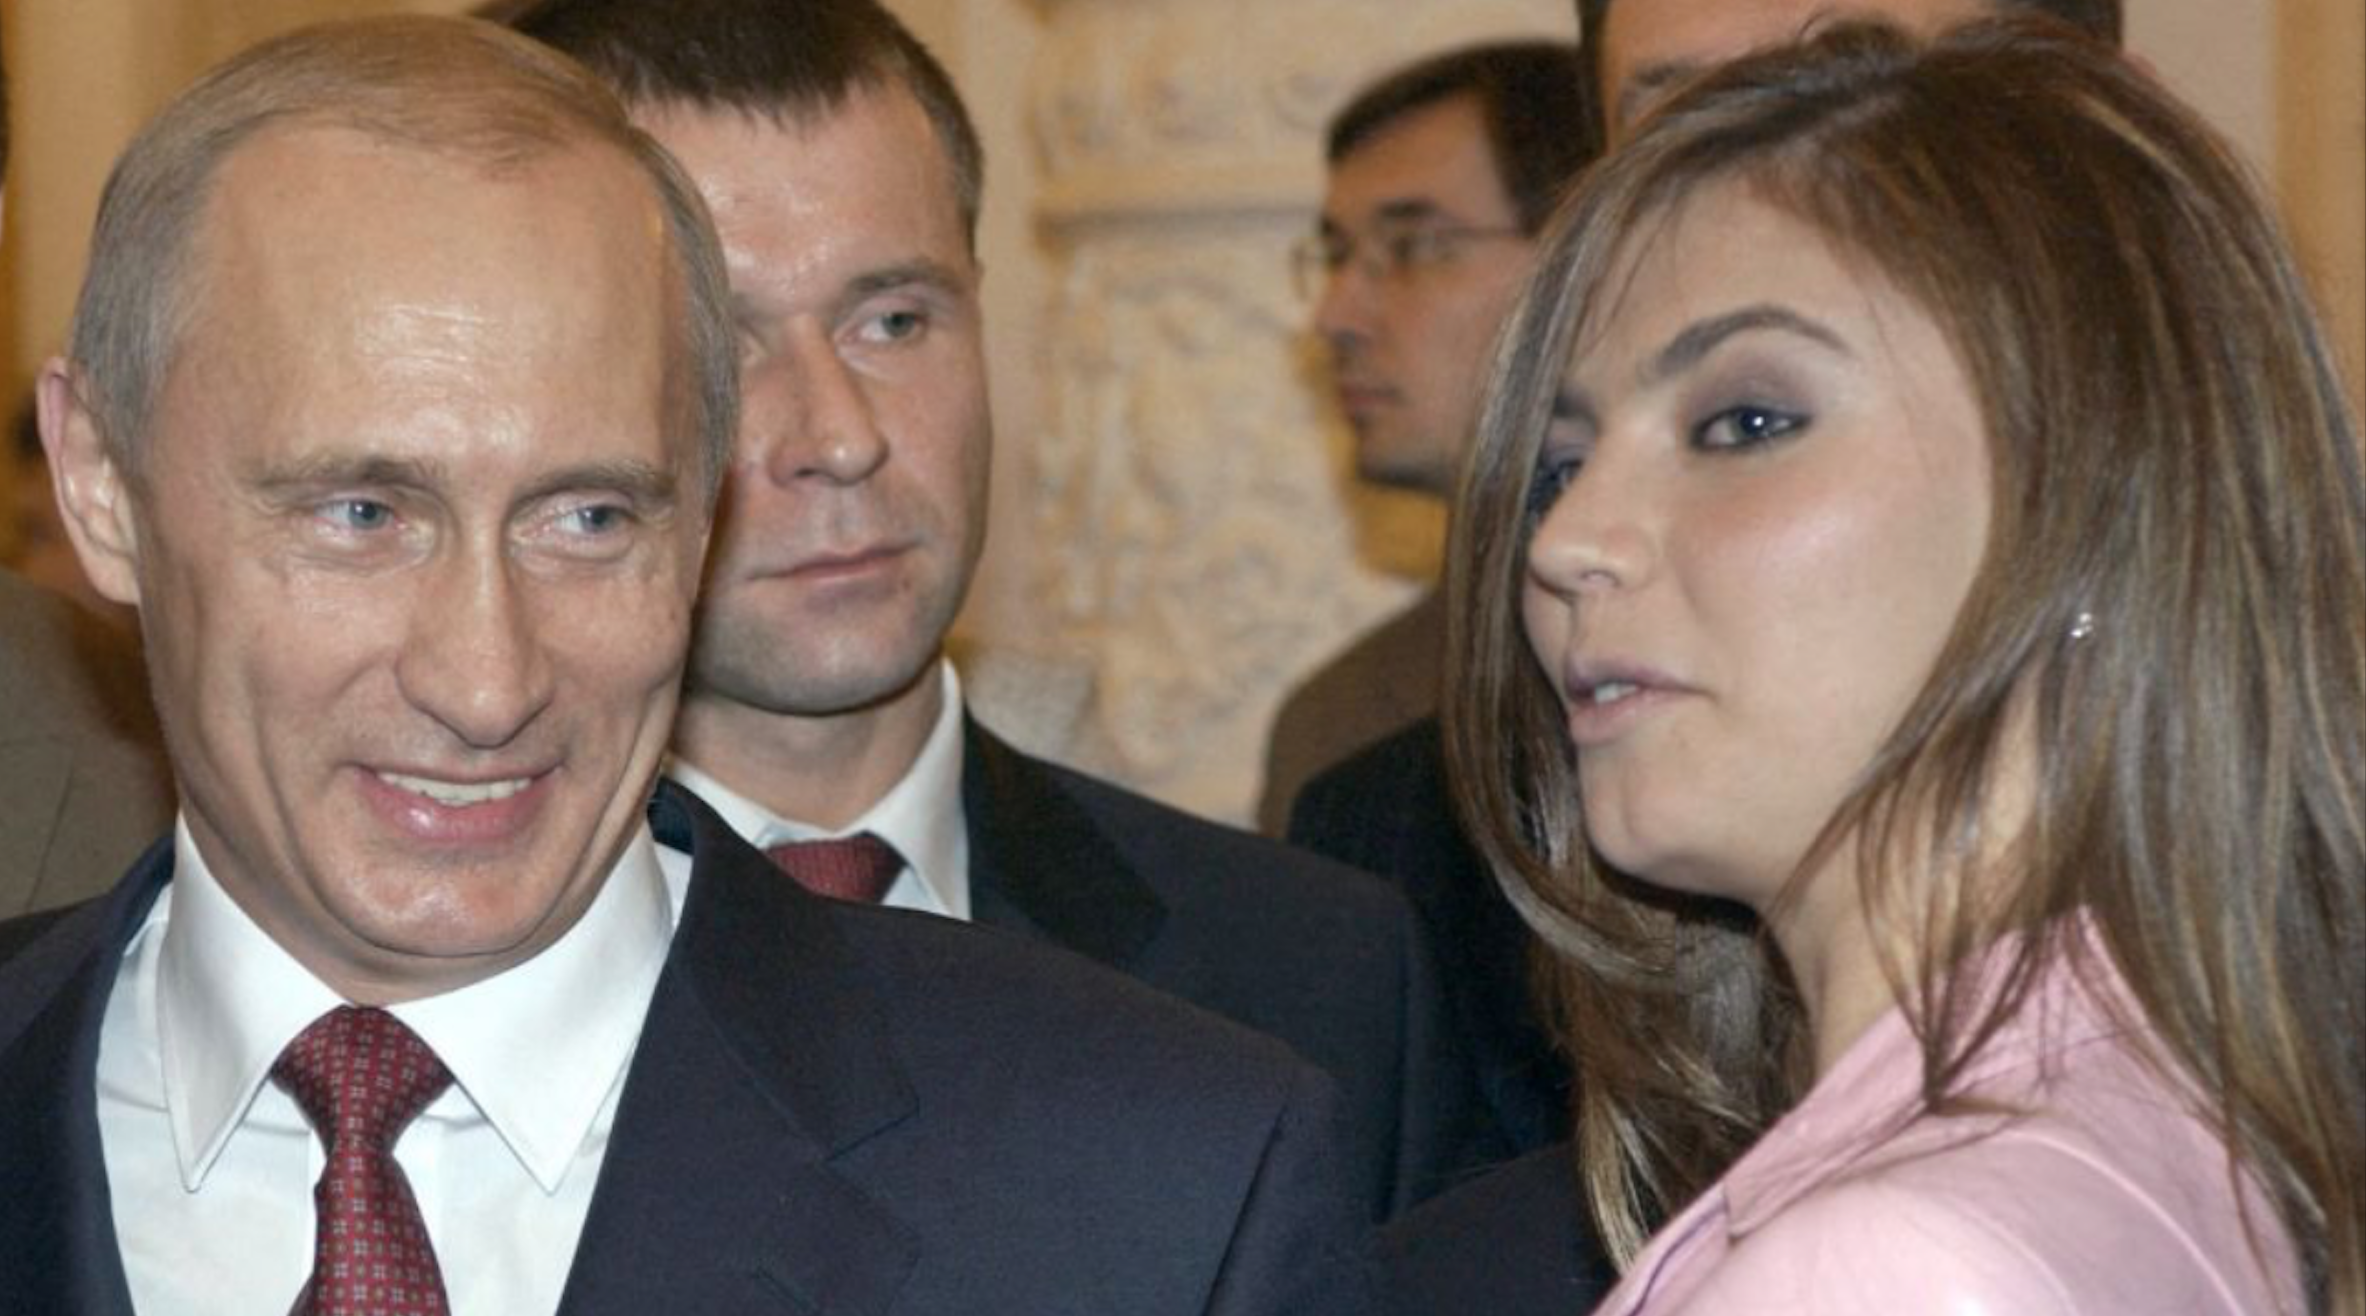 Vladimir Poutine : sa jeune compagne Alina Kabaeva bientôt expulsée de Suisse où elle se cache ?